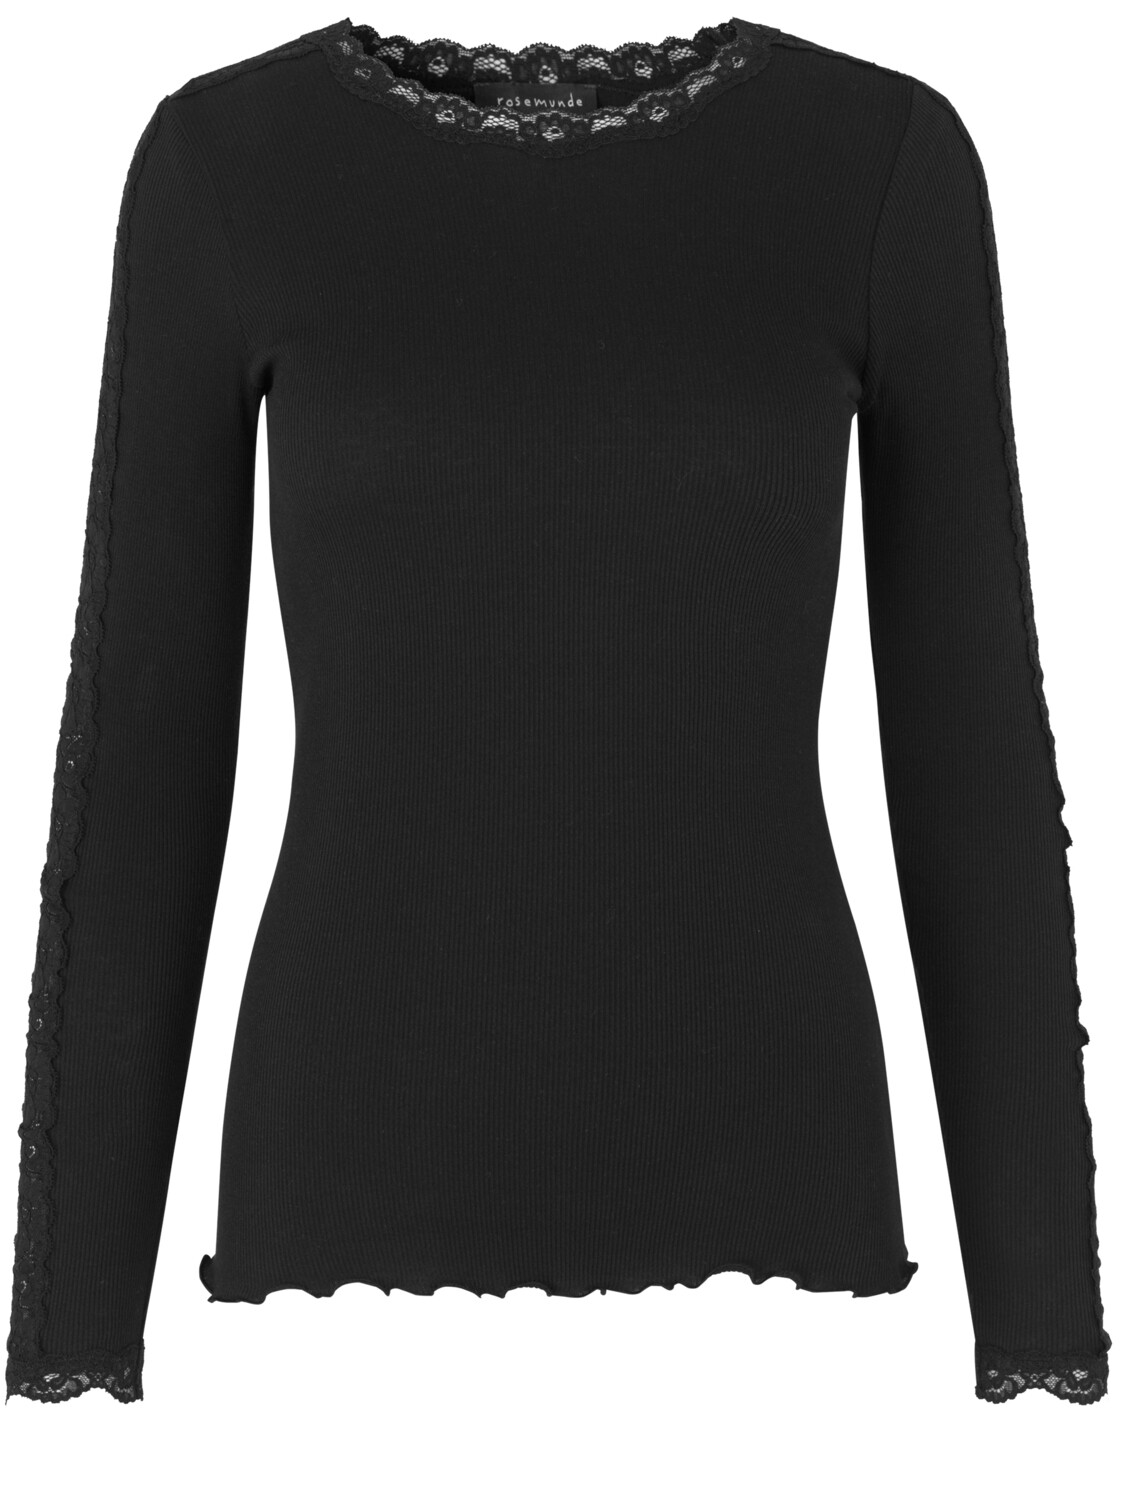 Lace Tshirt 4893 Black